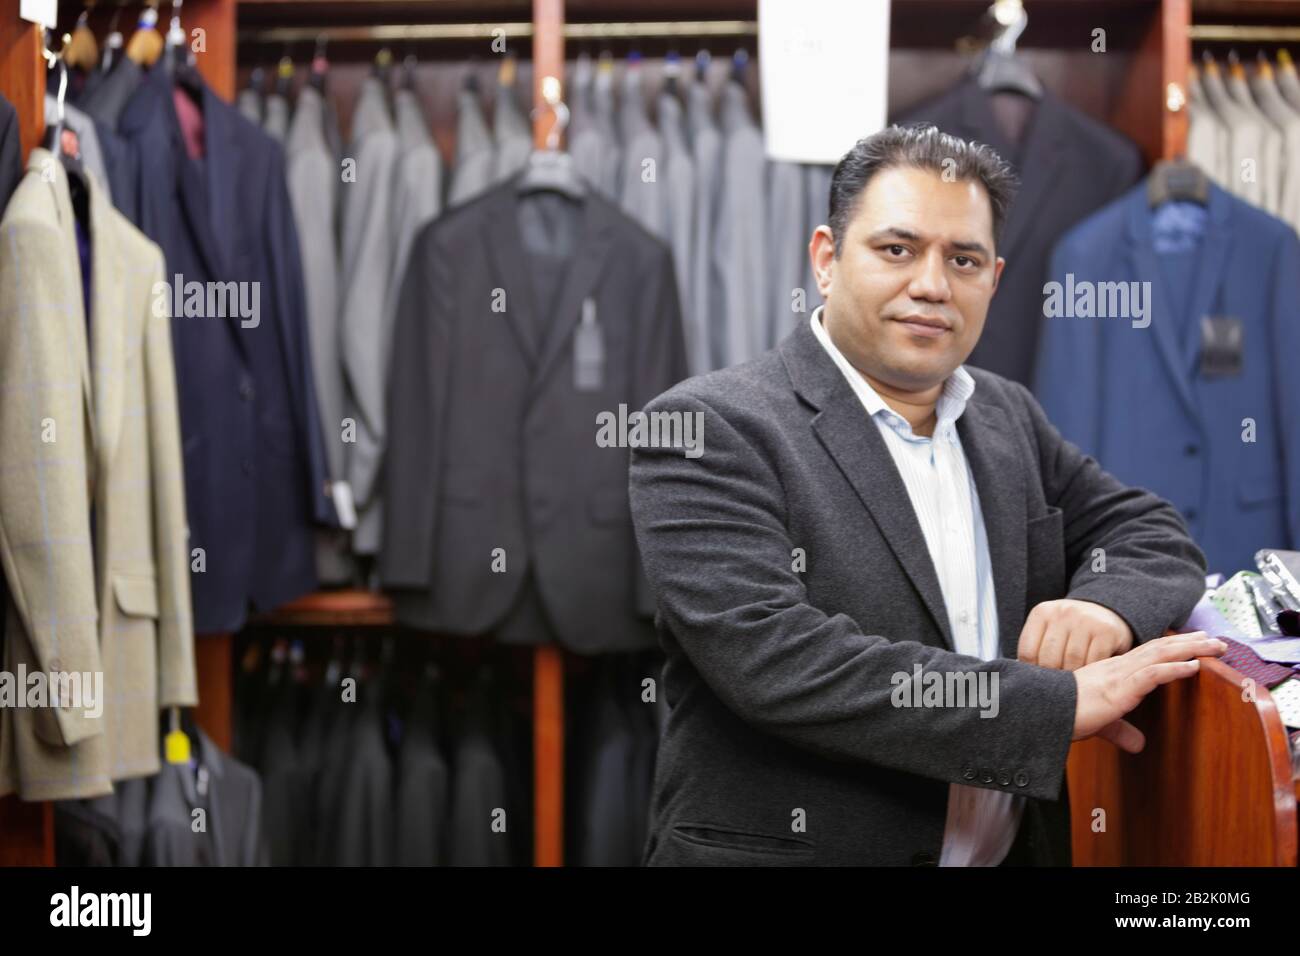 Portrait d'un homme d'affaires se tenant dans un magasin de vêtements pour hommes Banque D'Images